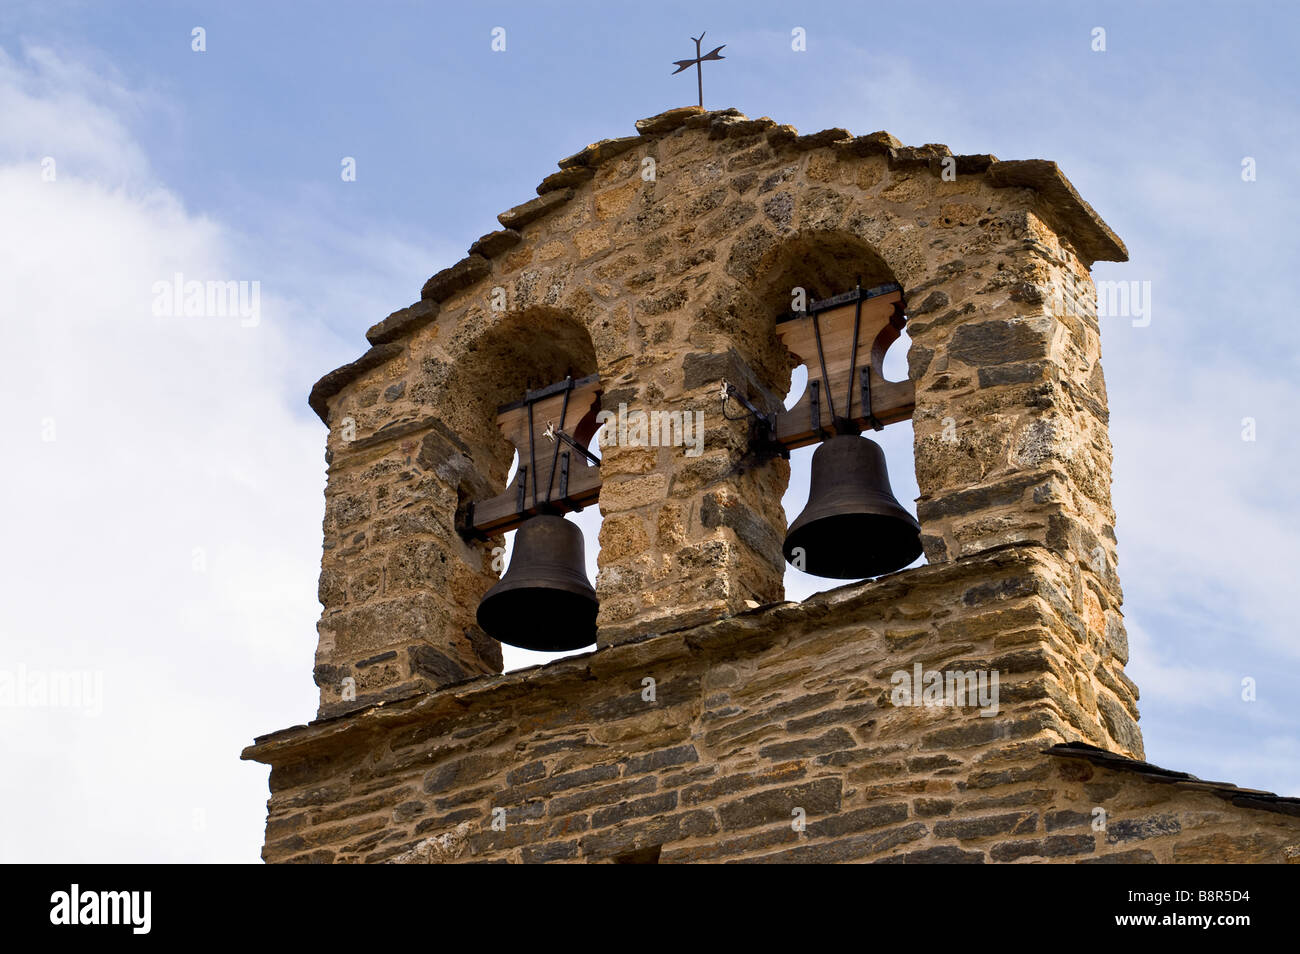 Beffroi du 12e siècle église de style Romane Sant Quirc de Durro. Vall de Boi, Catalogne, Espagne. Banque D'Images